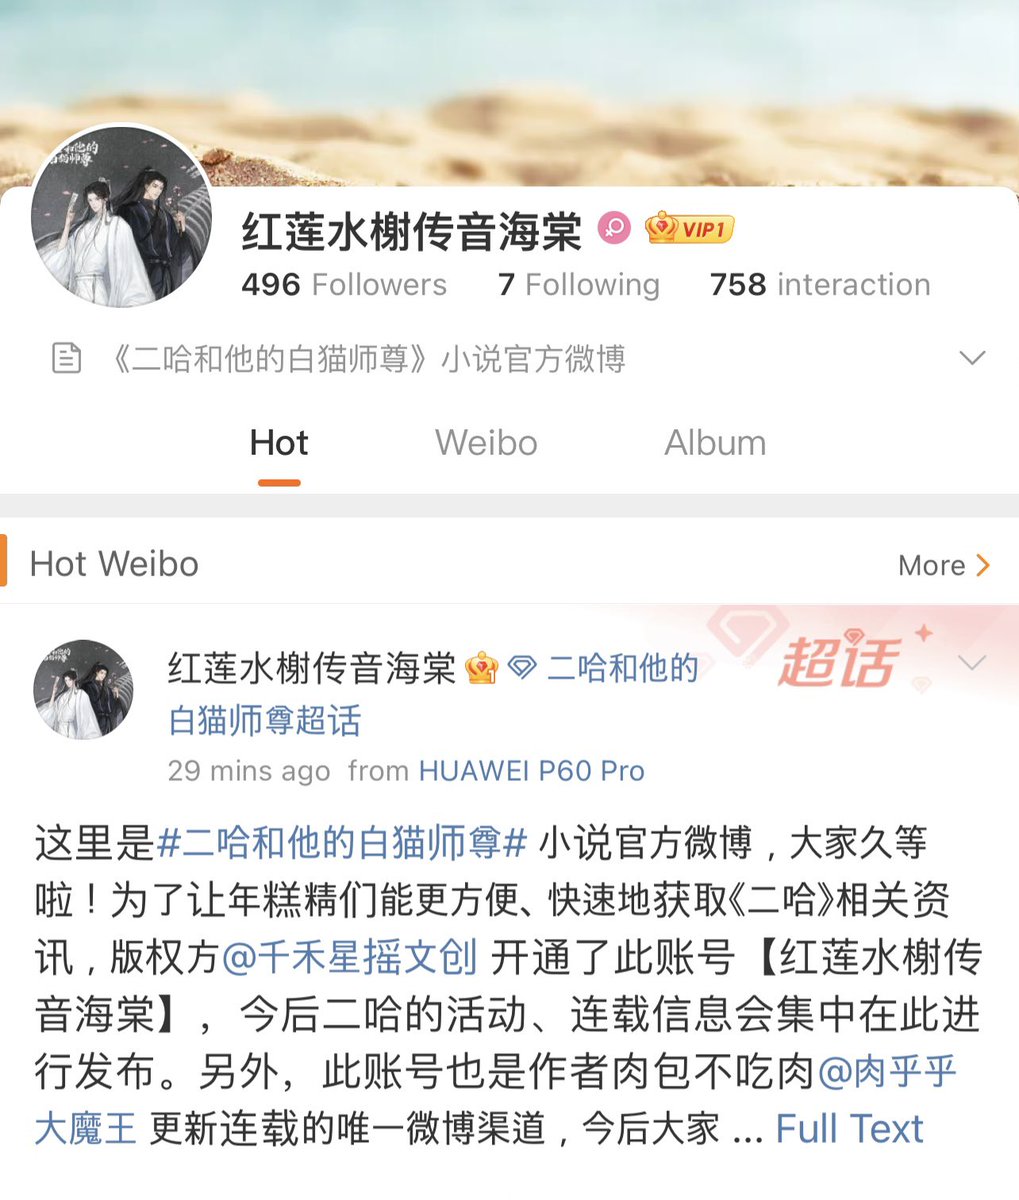 อฟช 2ha ฉบับนิยายงอกแอค แล้ว ฮอส จะได้ออนเมื่อไรครัช 🐾 weibo.com/u/6588362835